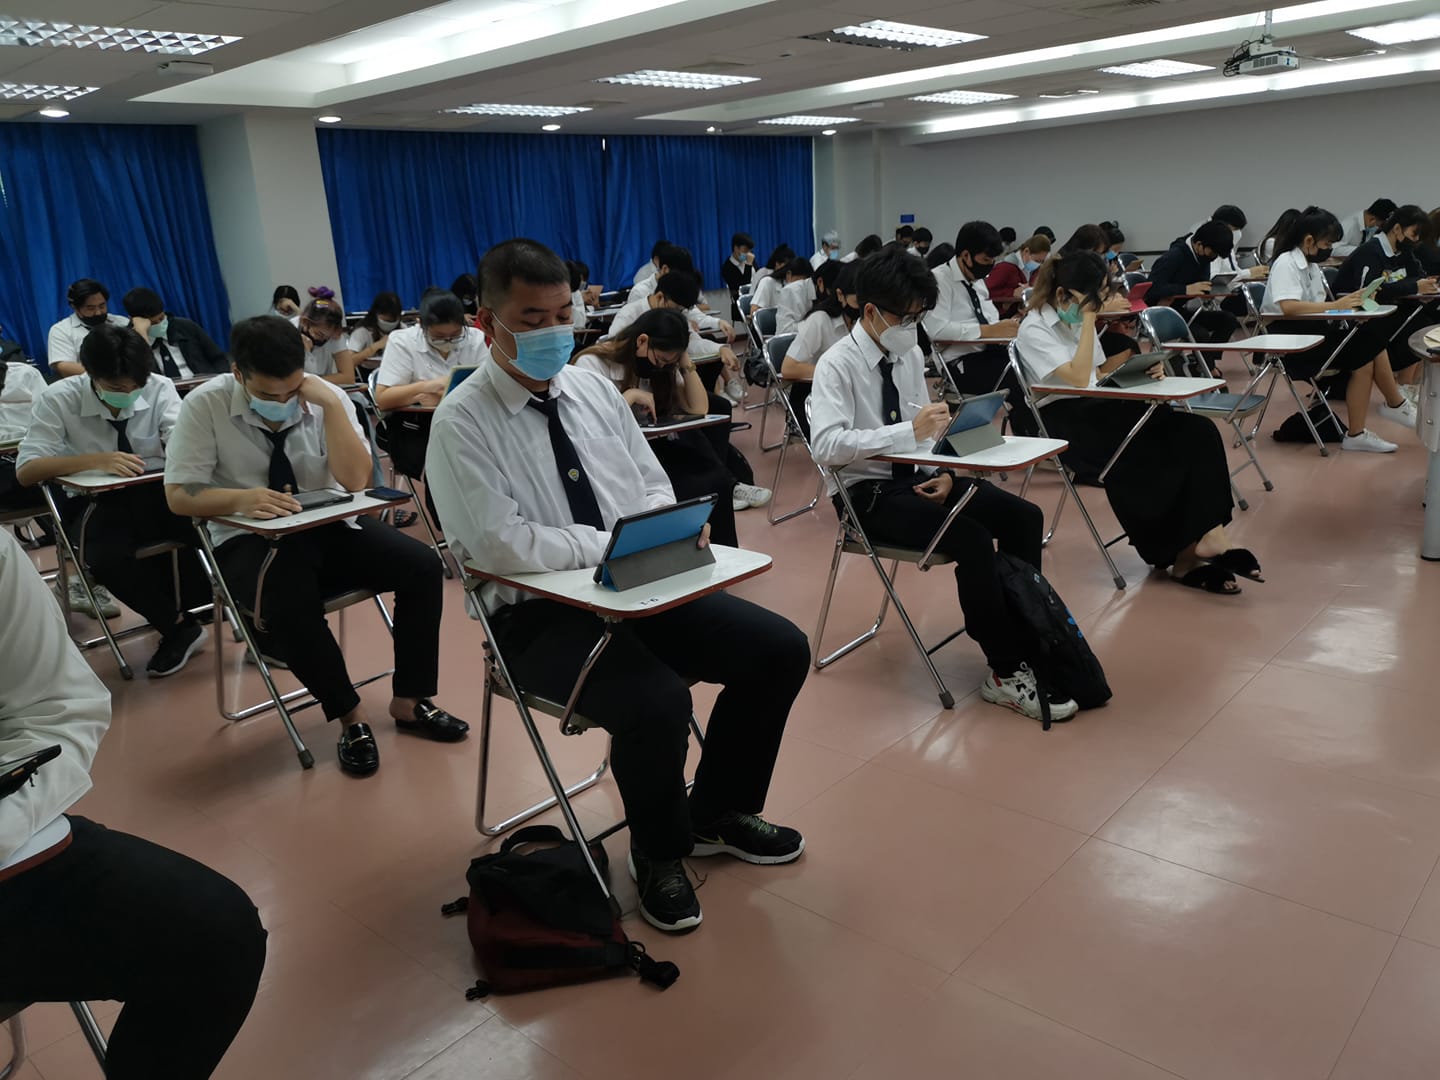 ม.หอการค้าไทย สอบผ่านไอแพดลดปริมาณการใช้กระดาษ ตอกย้ำนวัตกรรมการสอน